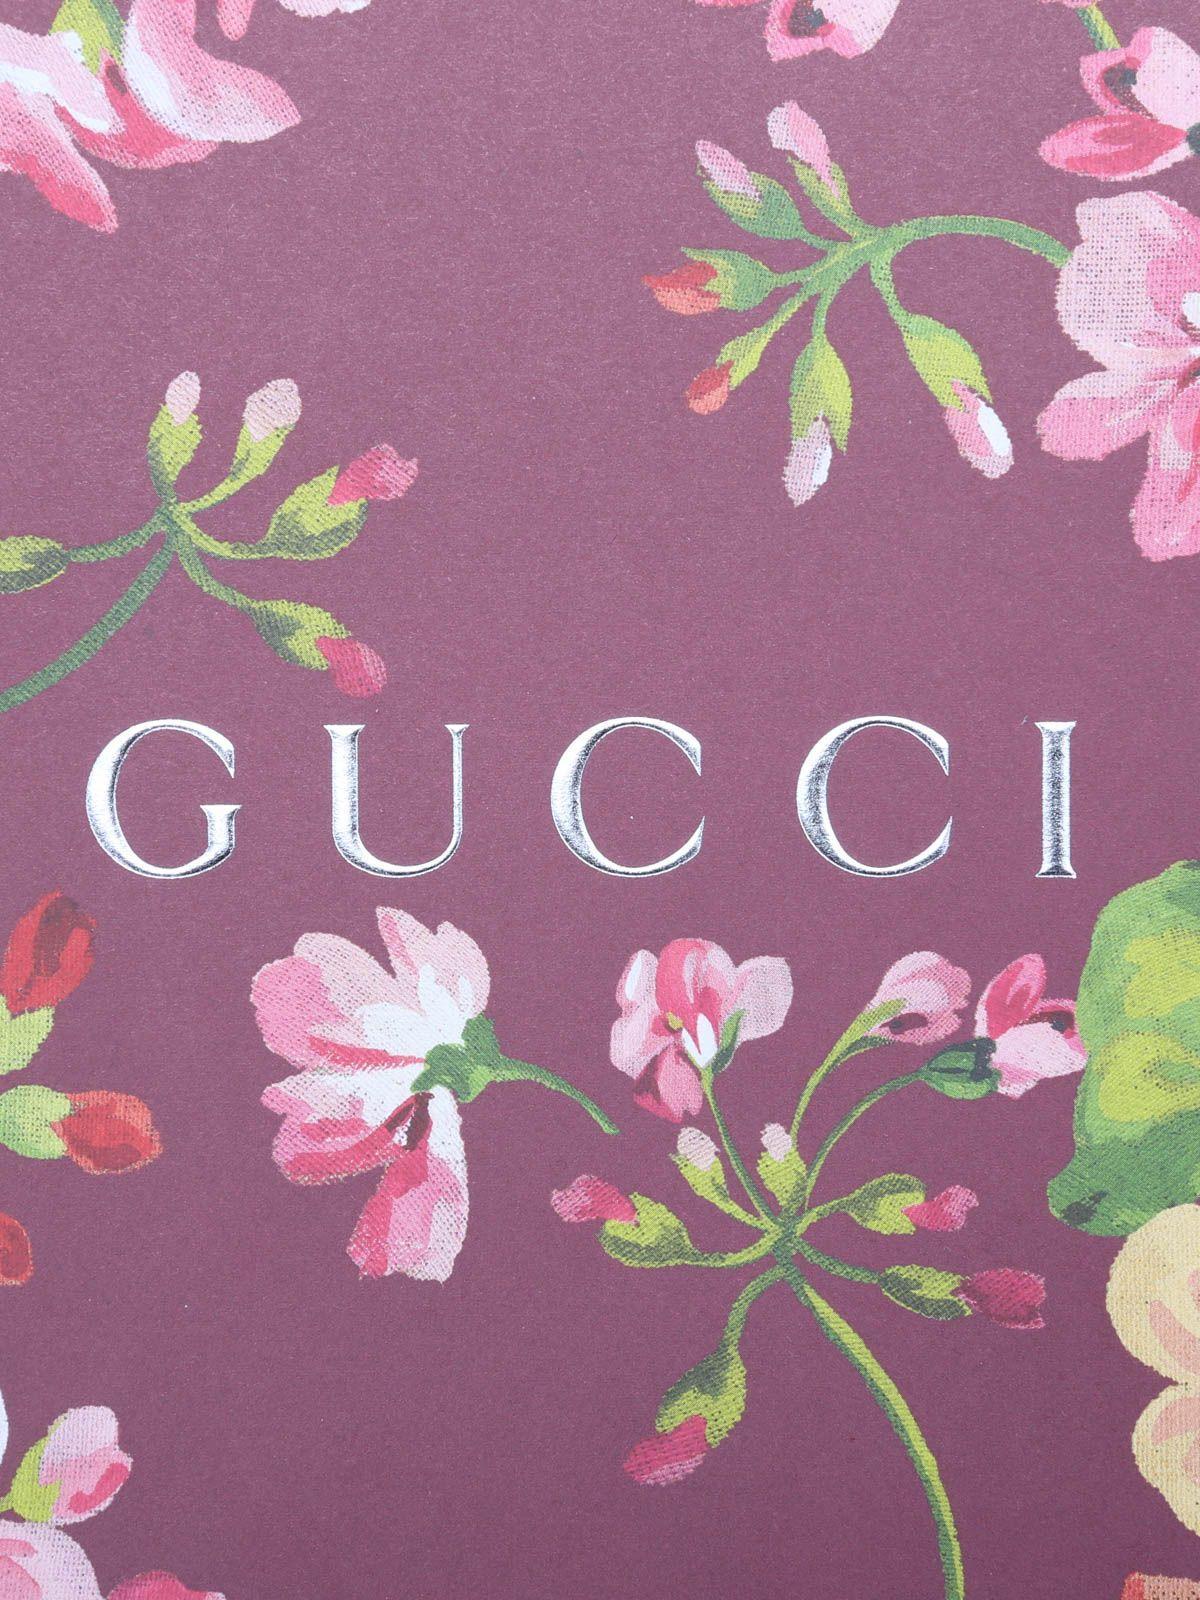 Một trong những xu hướng thịnh hành nhất cho phụ nữ hiện nay chính là Gucci Girly Backgrounds. Chúng tôi tổng hợp những hình ảnh đẹp và sang trọng với những mẫu thiết kế độc đáo của Gucci. Đừng ngần ngại click để xem những hình nền tuyệt đẹp với Gucci Girly Backgrounds.